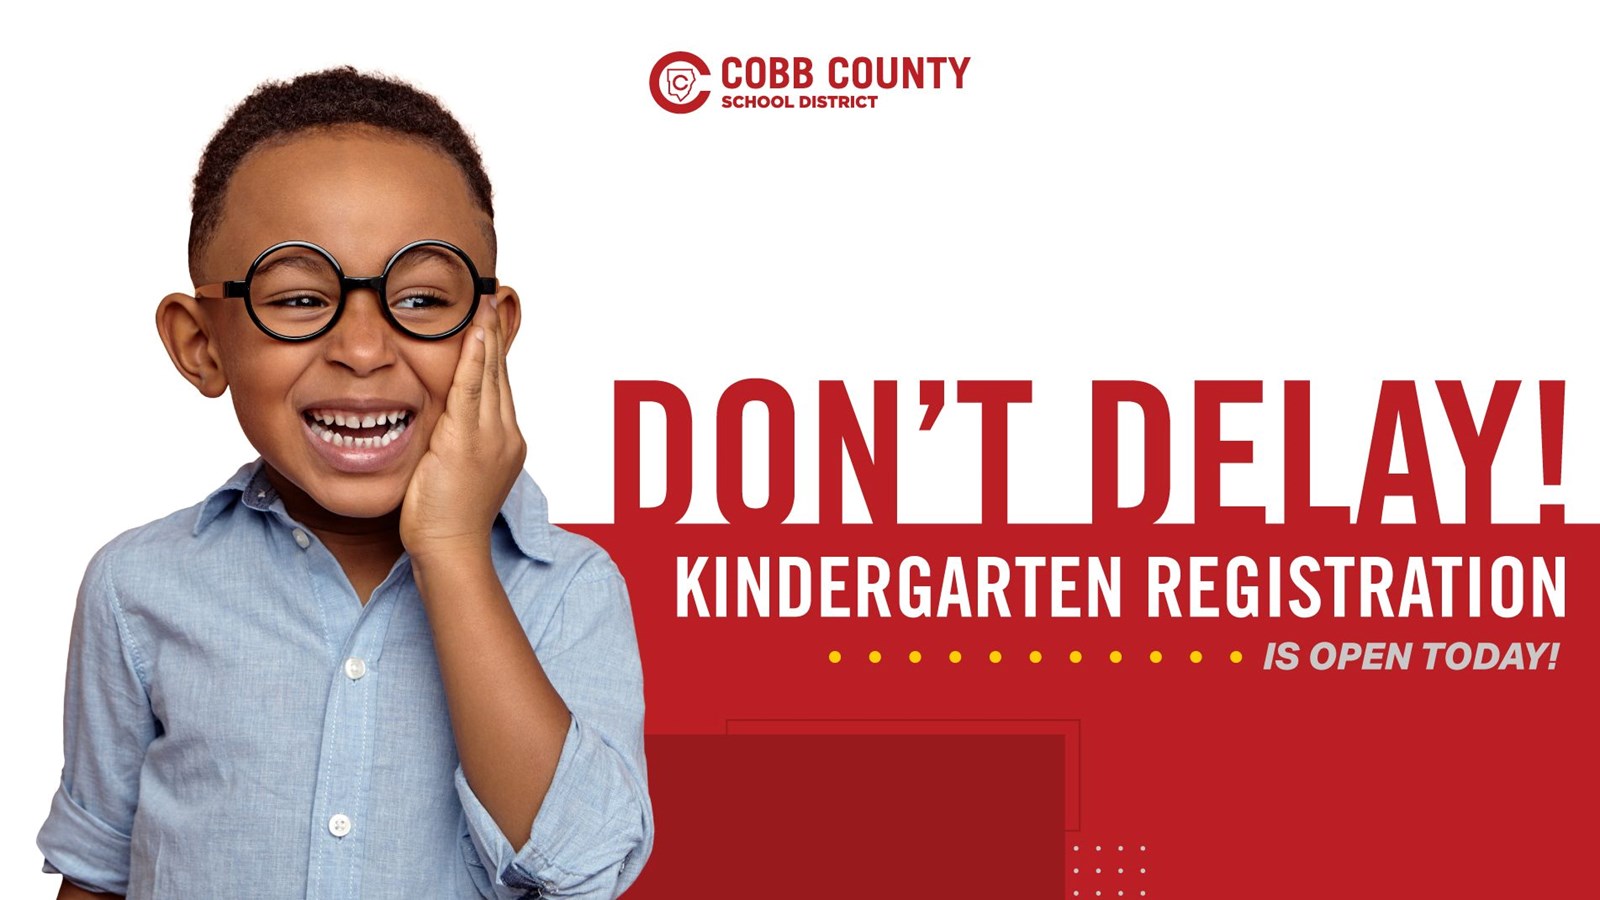 Kindergarten Registration is open